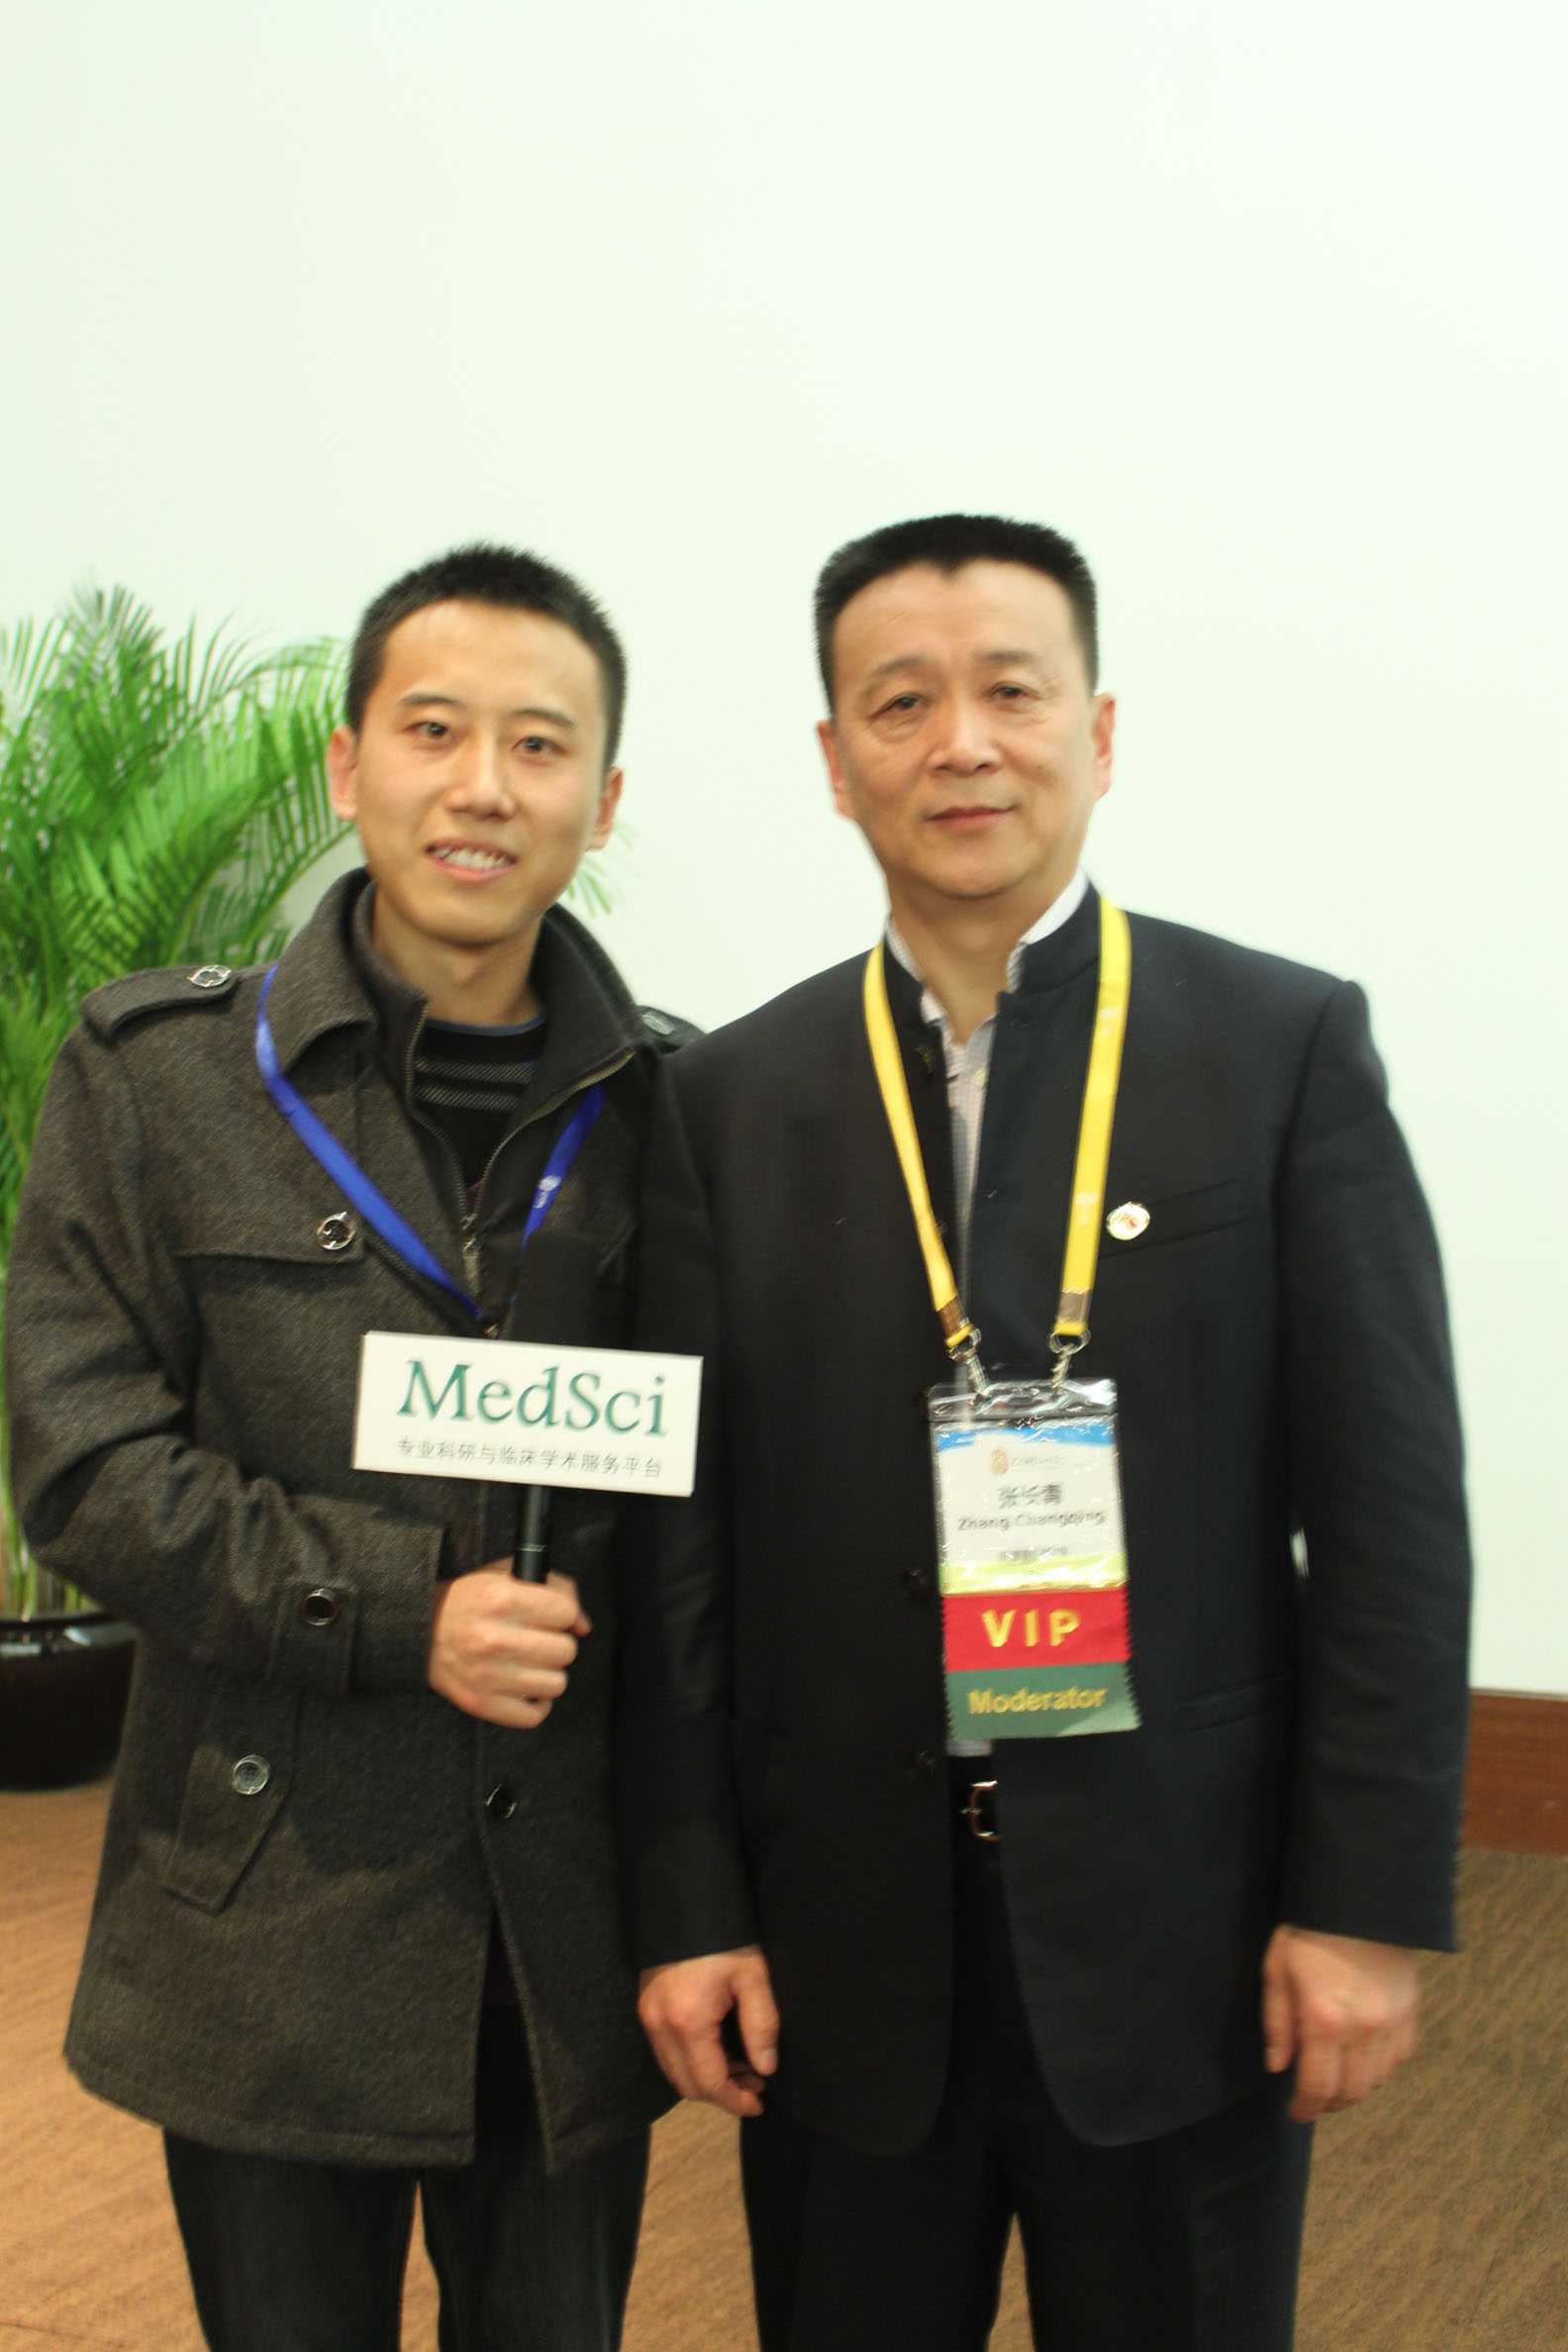 张长青教授：骨科临床成果需长期积累，莫只追求短期“亮点”【MedSci专访COA2012】